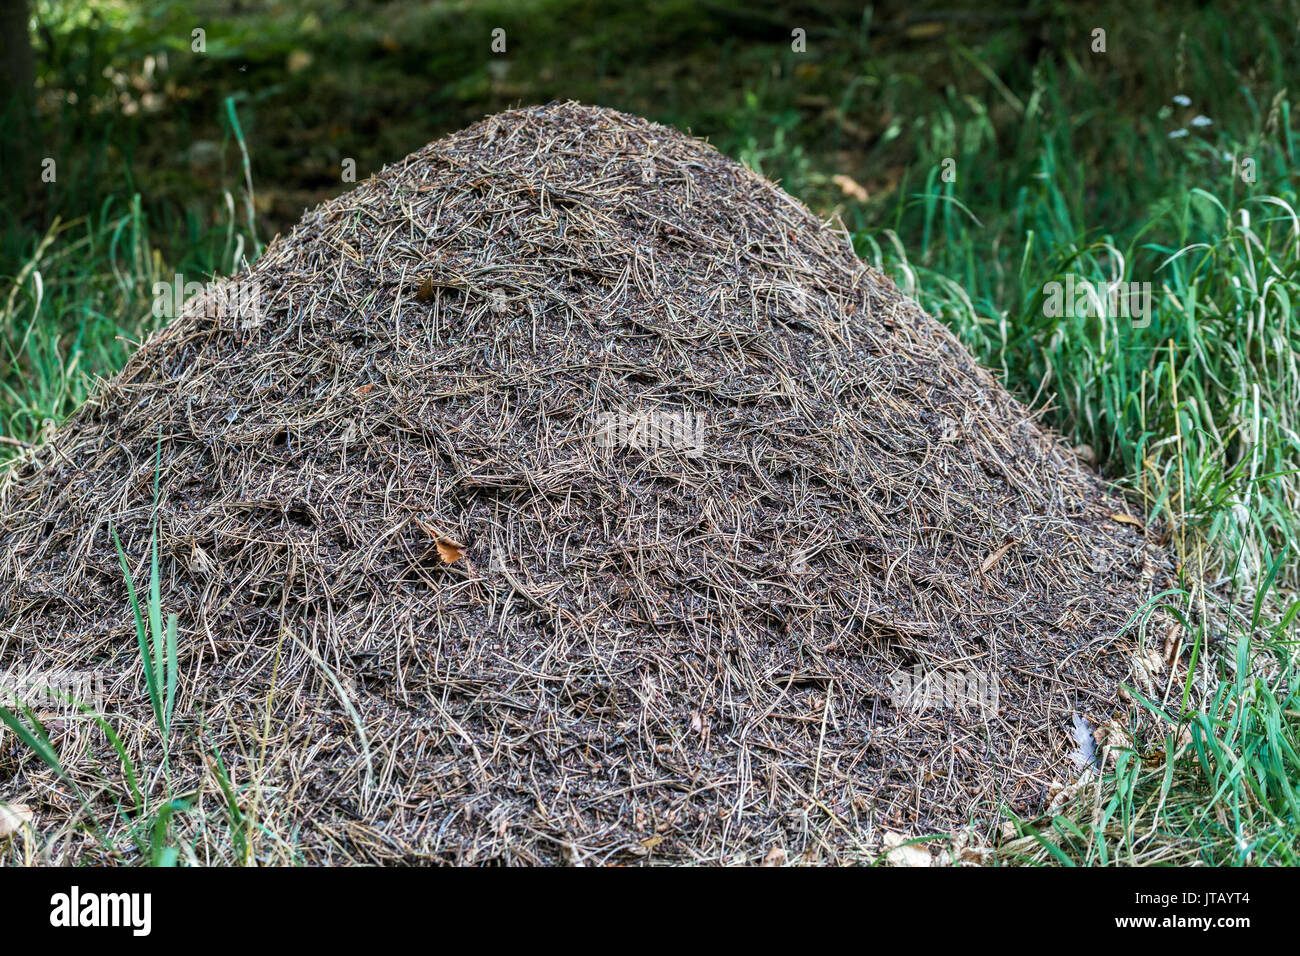 Ameisennest, Formica rufa, Antholzerwald, Ameisenhügel, Ameisennest, Tschechische Republik Stockfoto